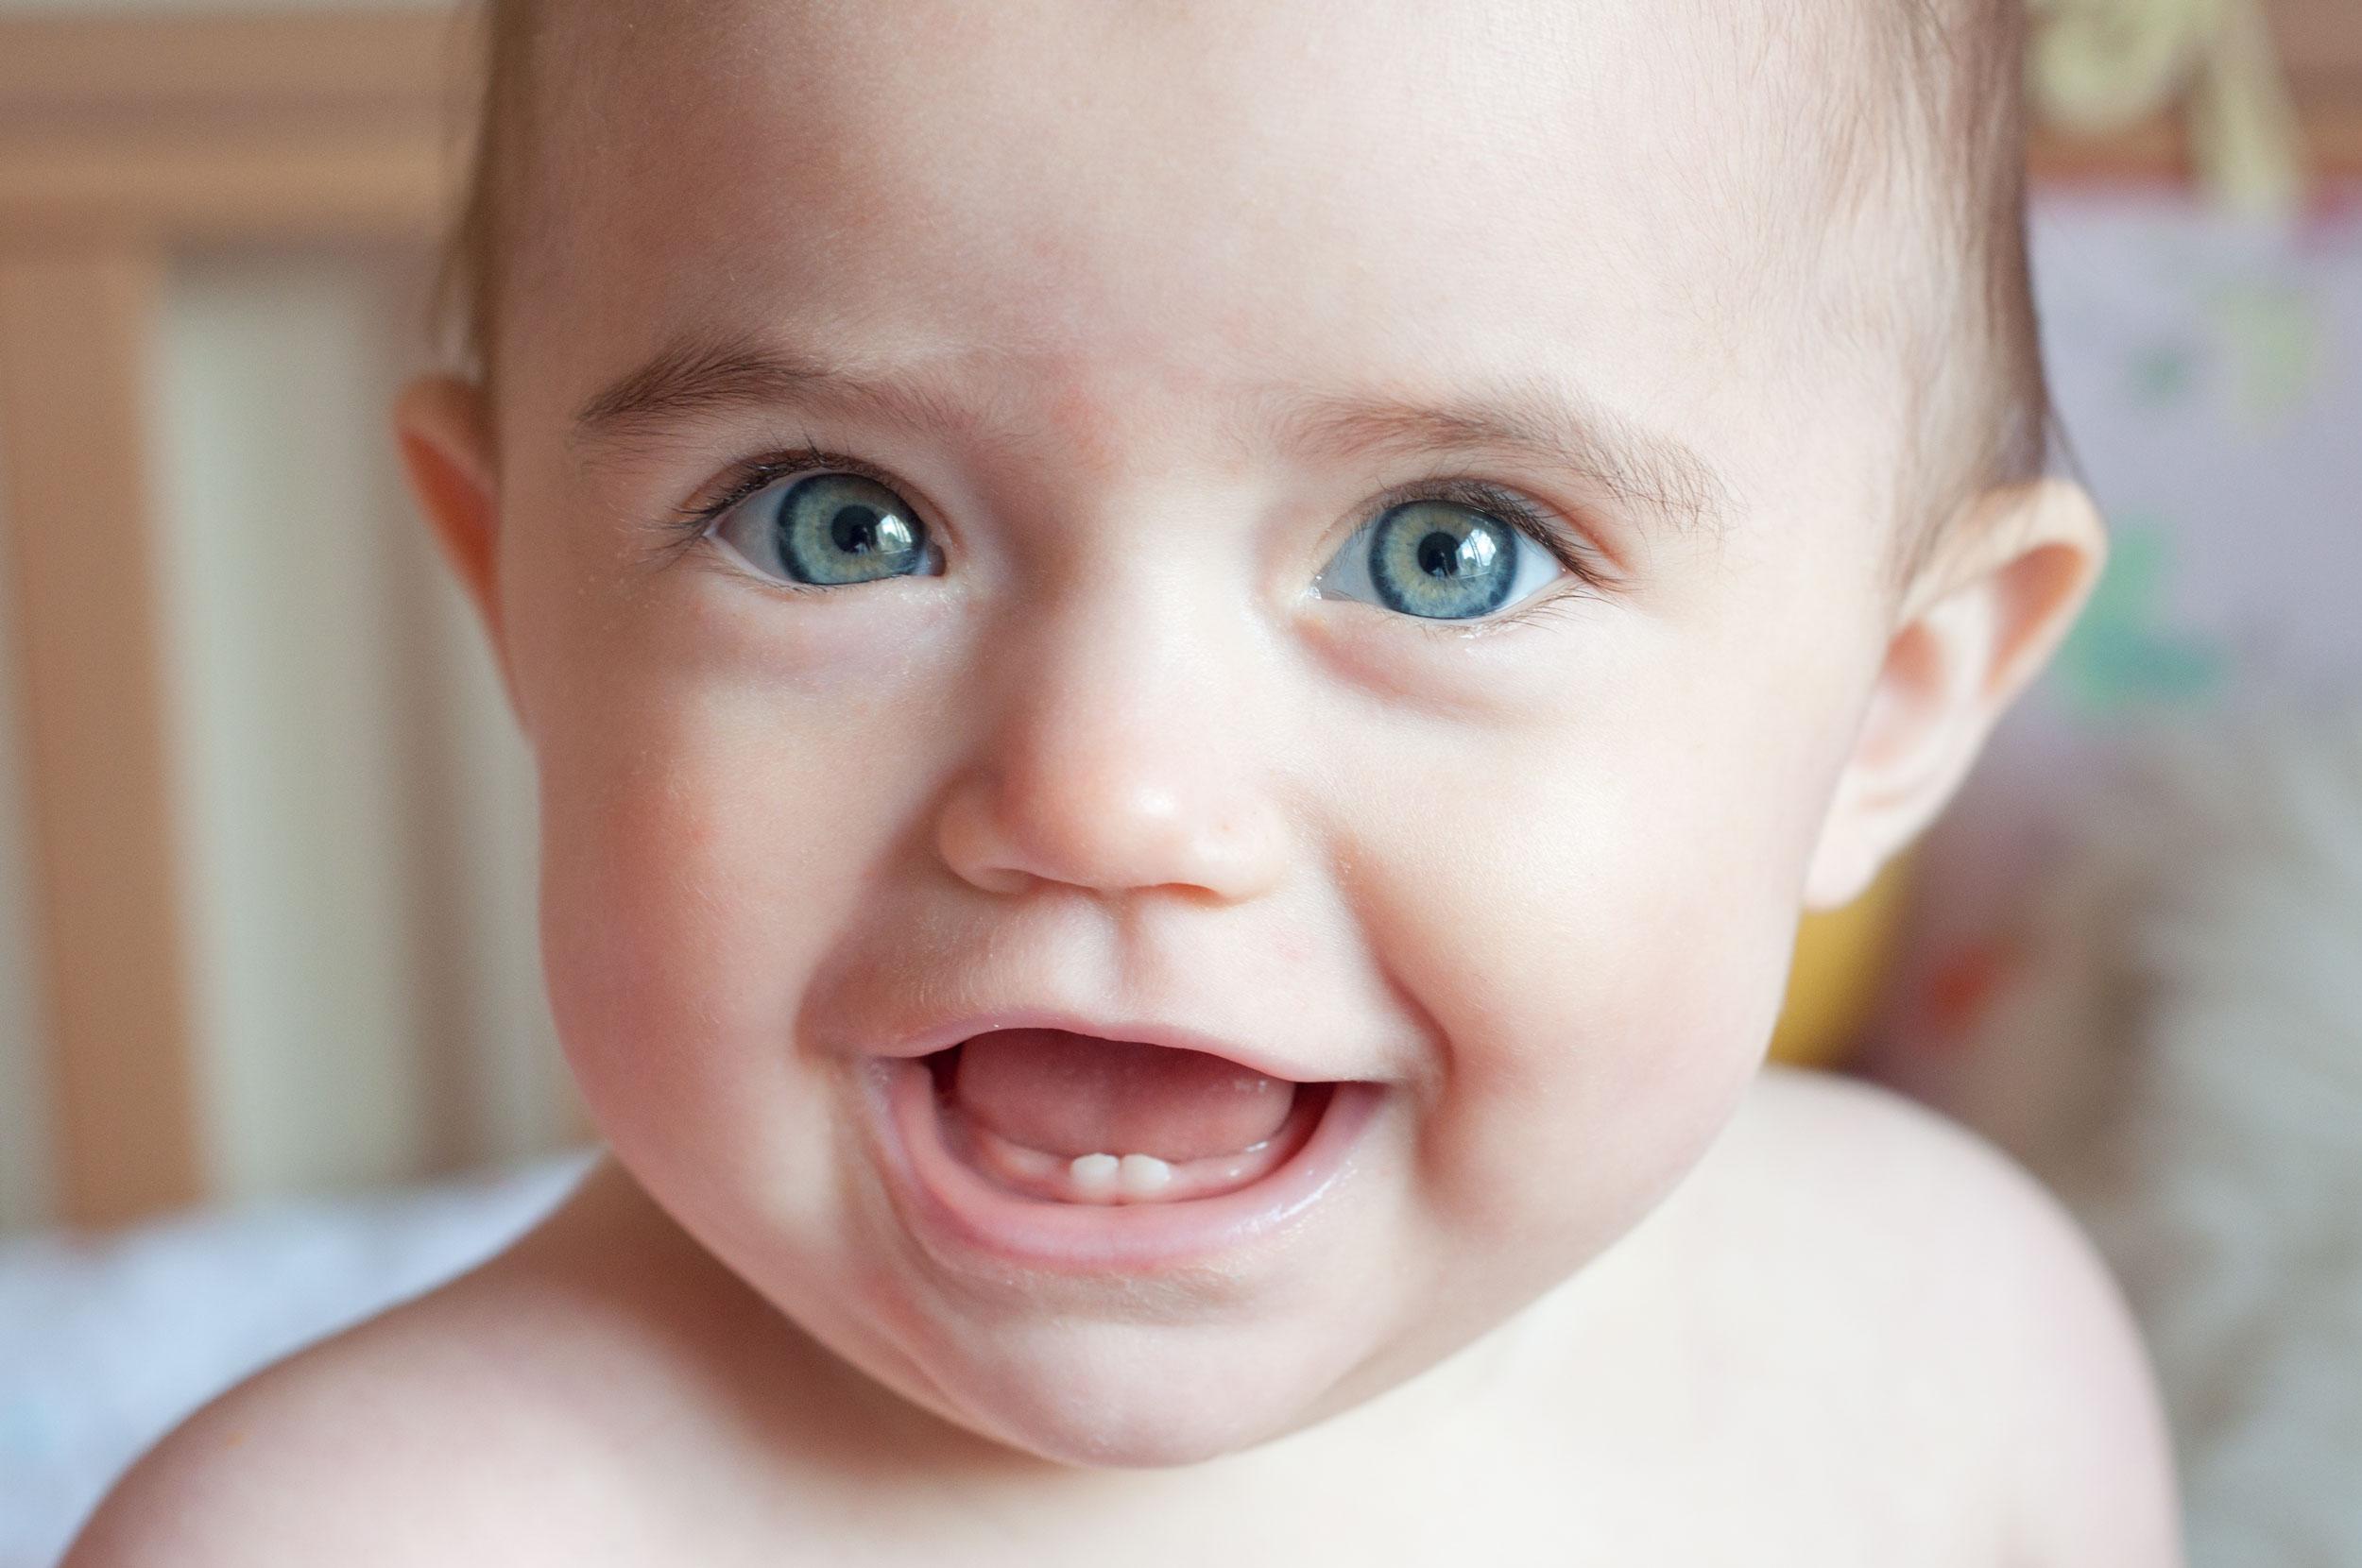 Beba kojoj rastu zubi u usta stavlja svaki predmet - Avaz